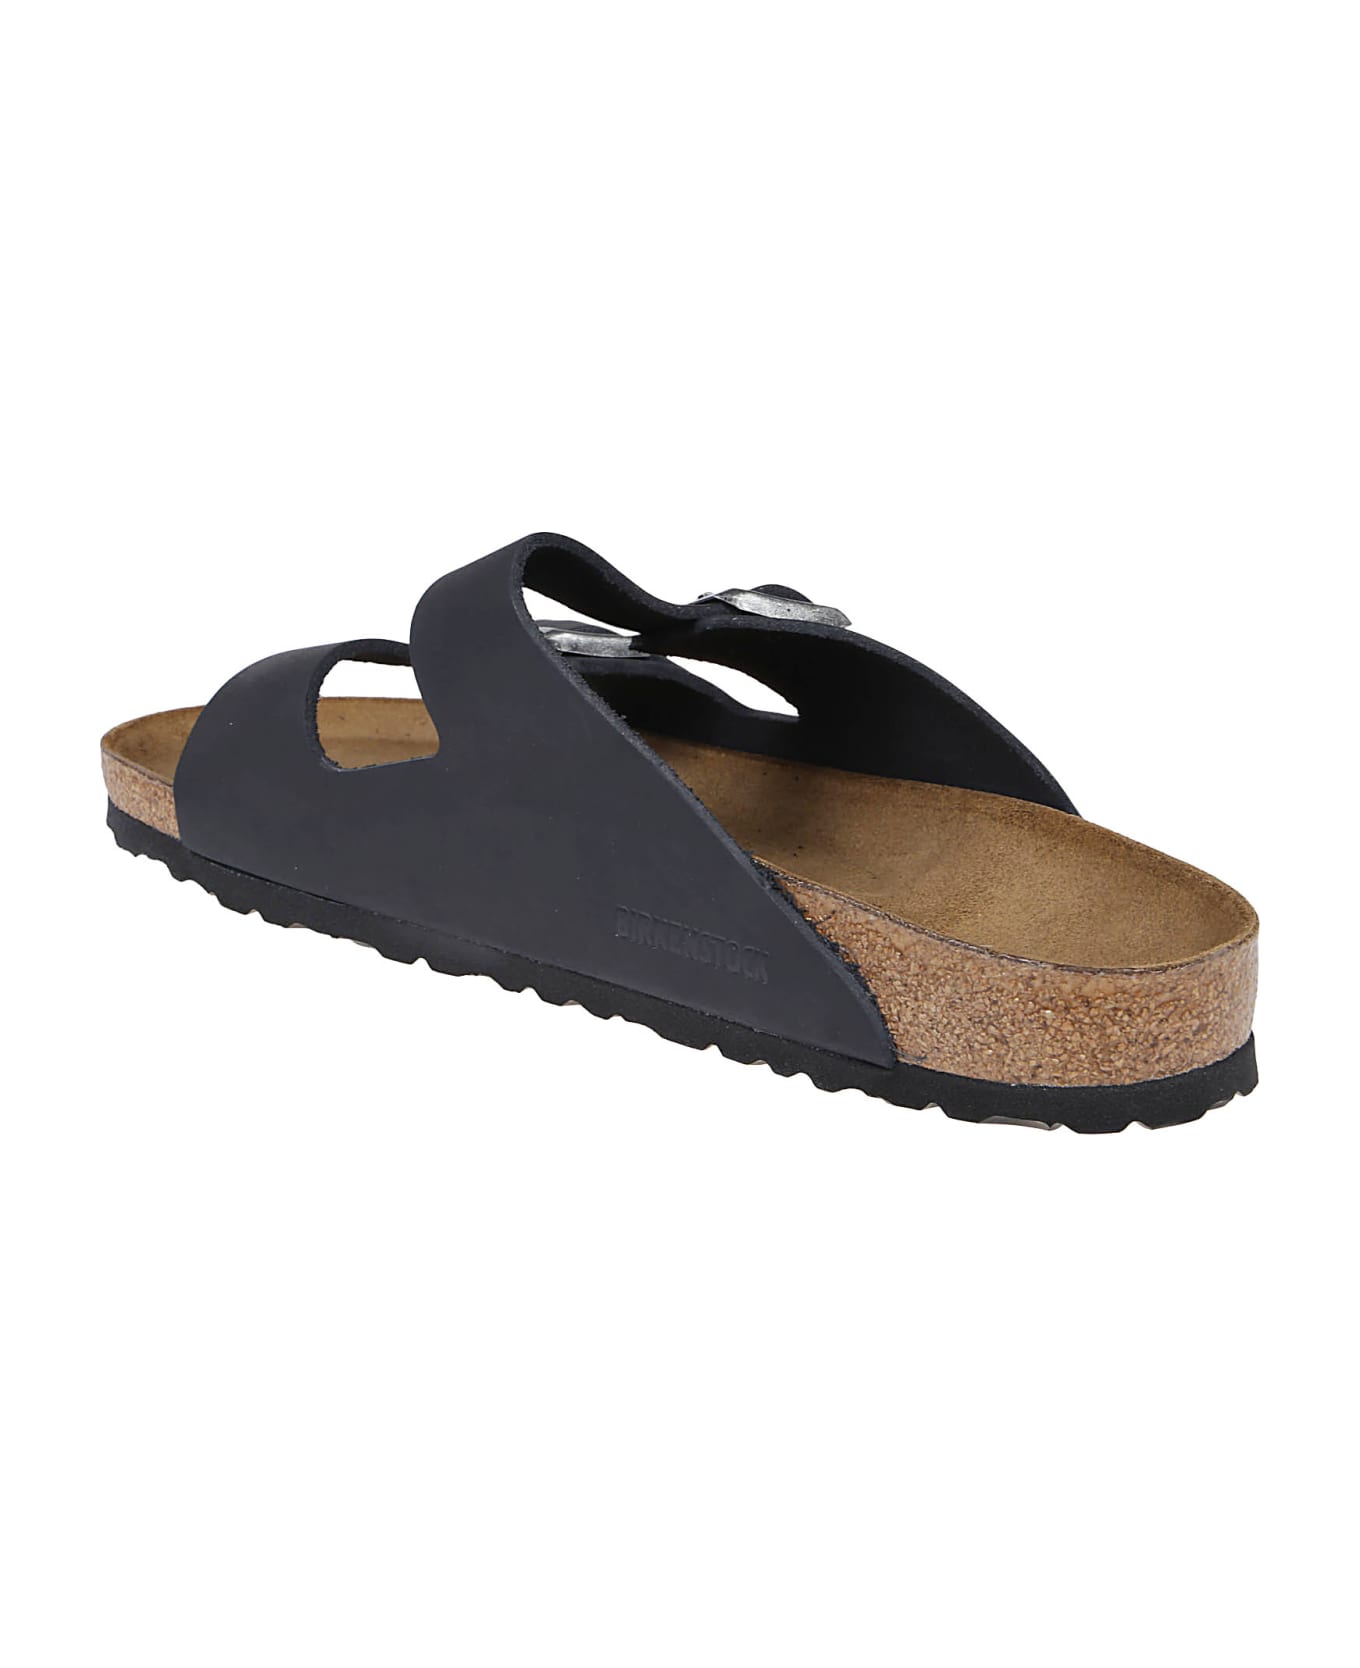 Birkenstock Arizona Sandals - Black その他各種シューズ